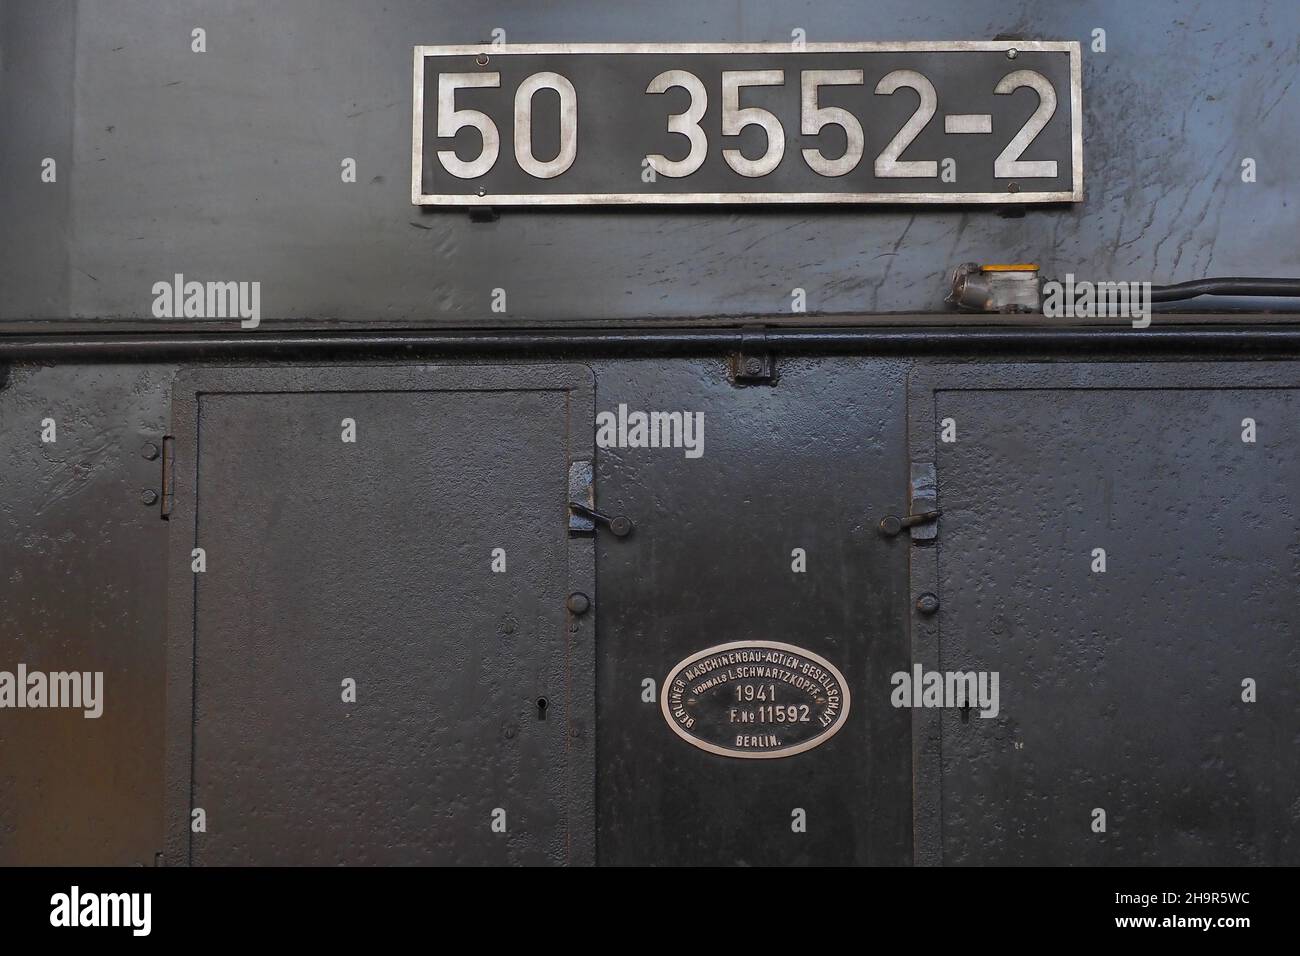 Numéro de série de la locomotive à vapeur de fer 1941, portes en fer de la locomotive à vapeur, véhicule ferroviaire, station désutilisée, atelier, maître de station,voyage en train Banque D'Images